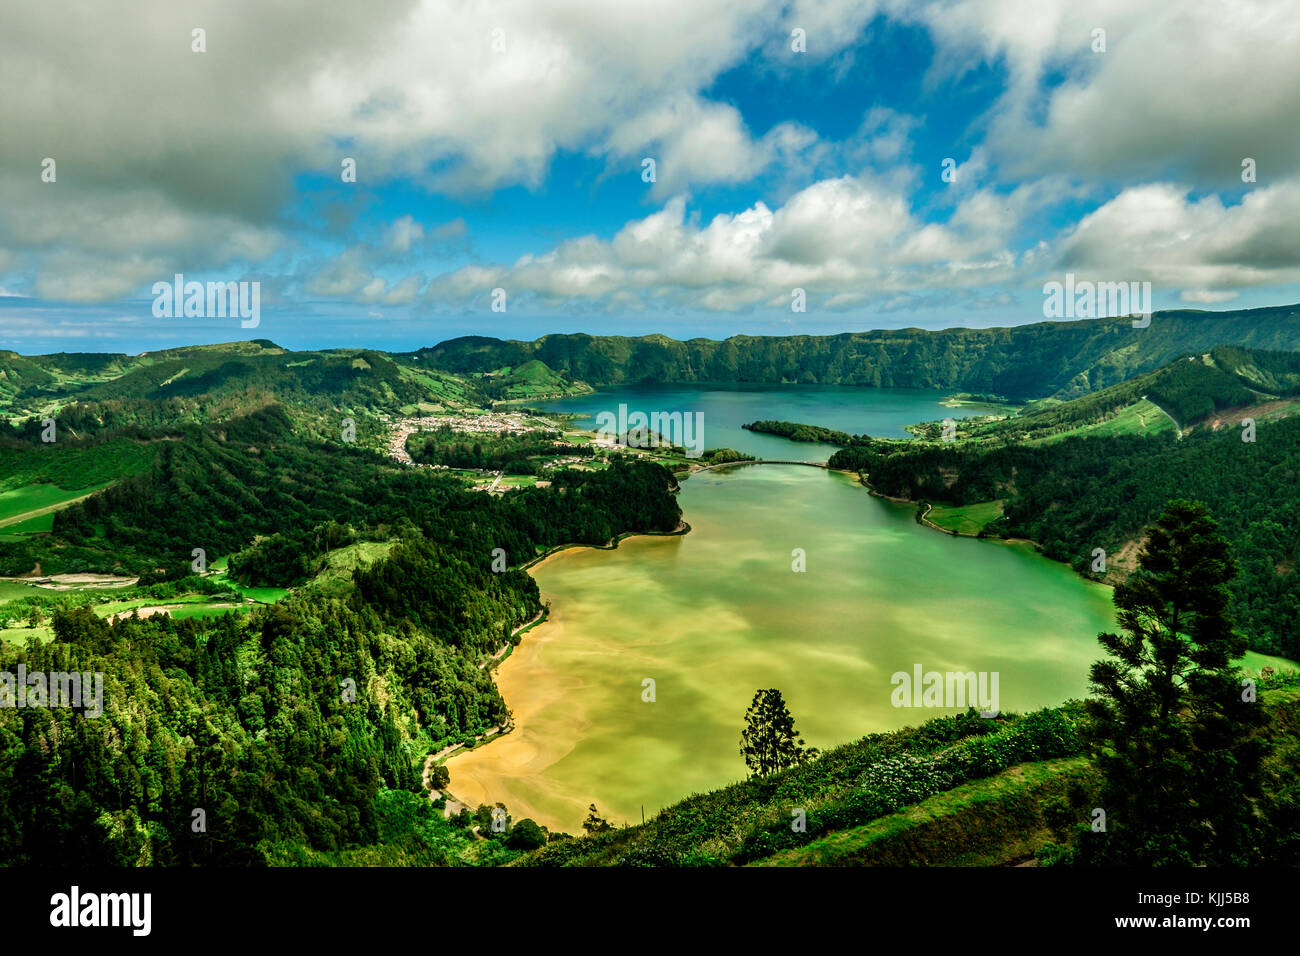 Lagoa das Sete Cidades, Sete Cidades lake è un lago di origine vulcanica in s.miguel island, Azzorre Foto Stock